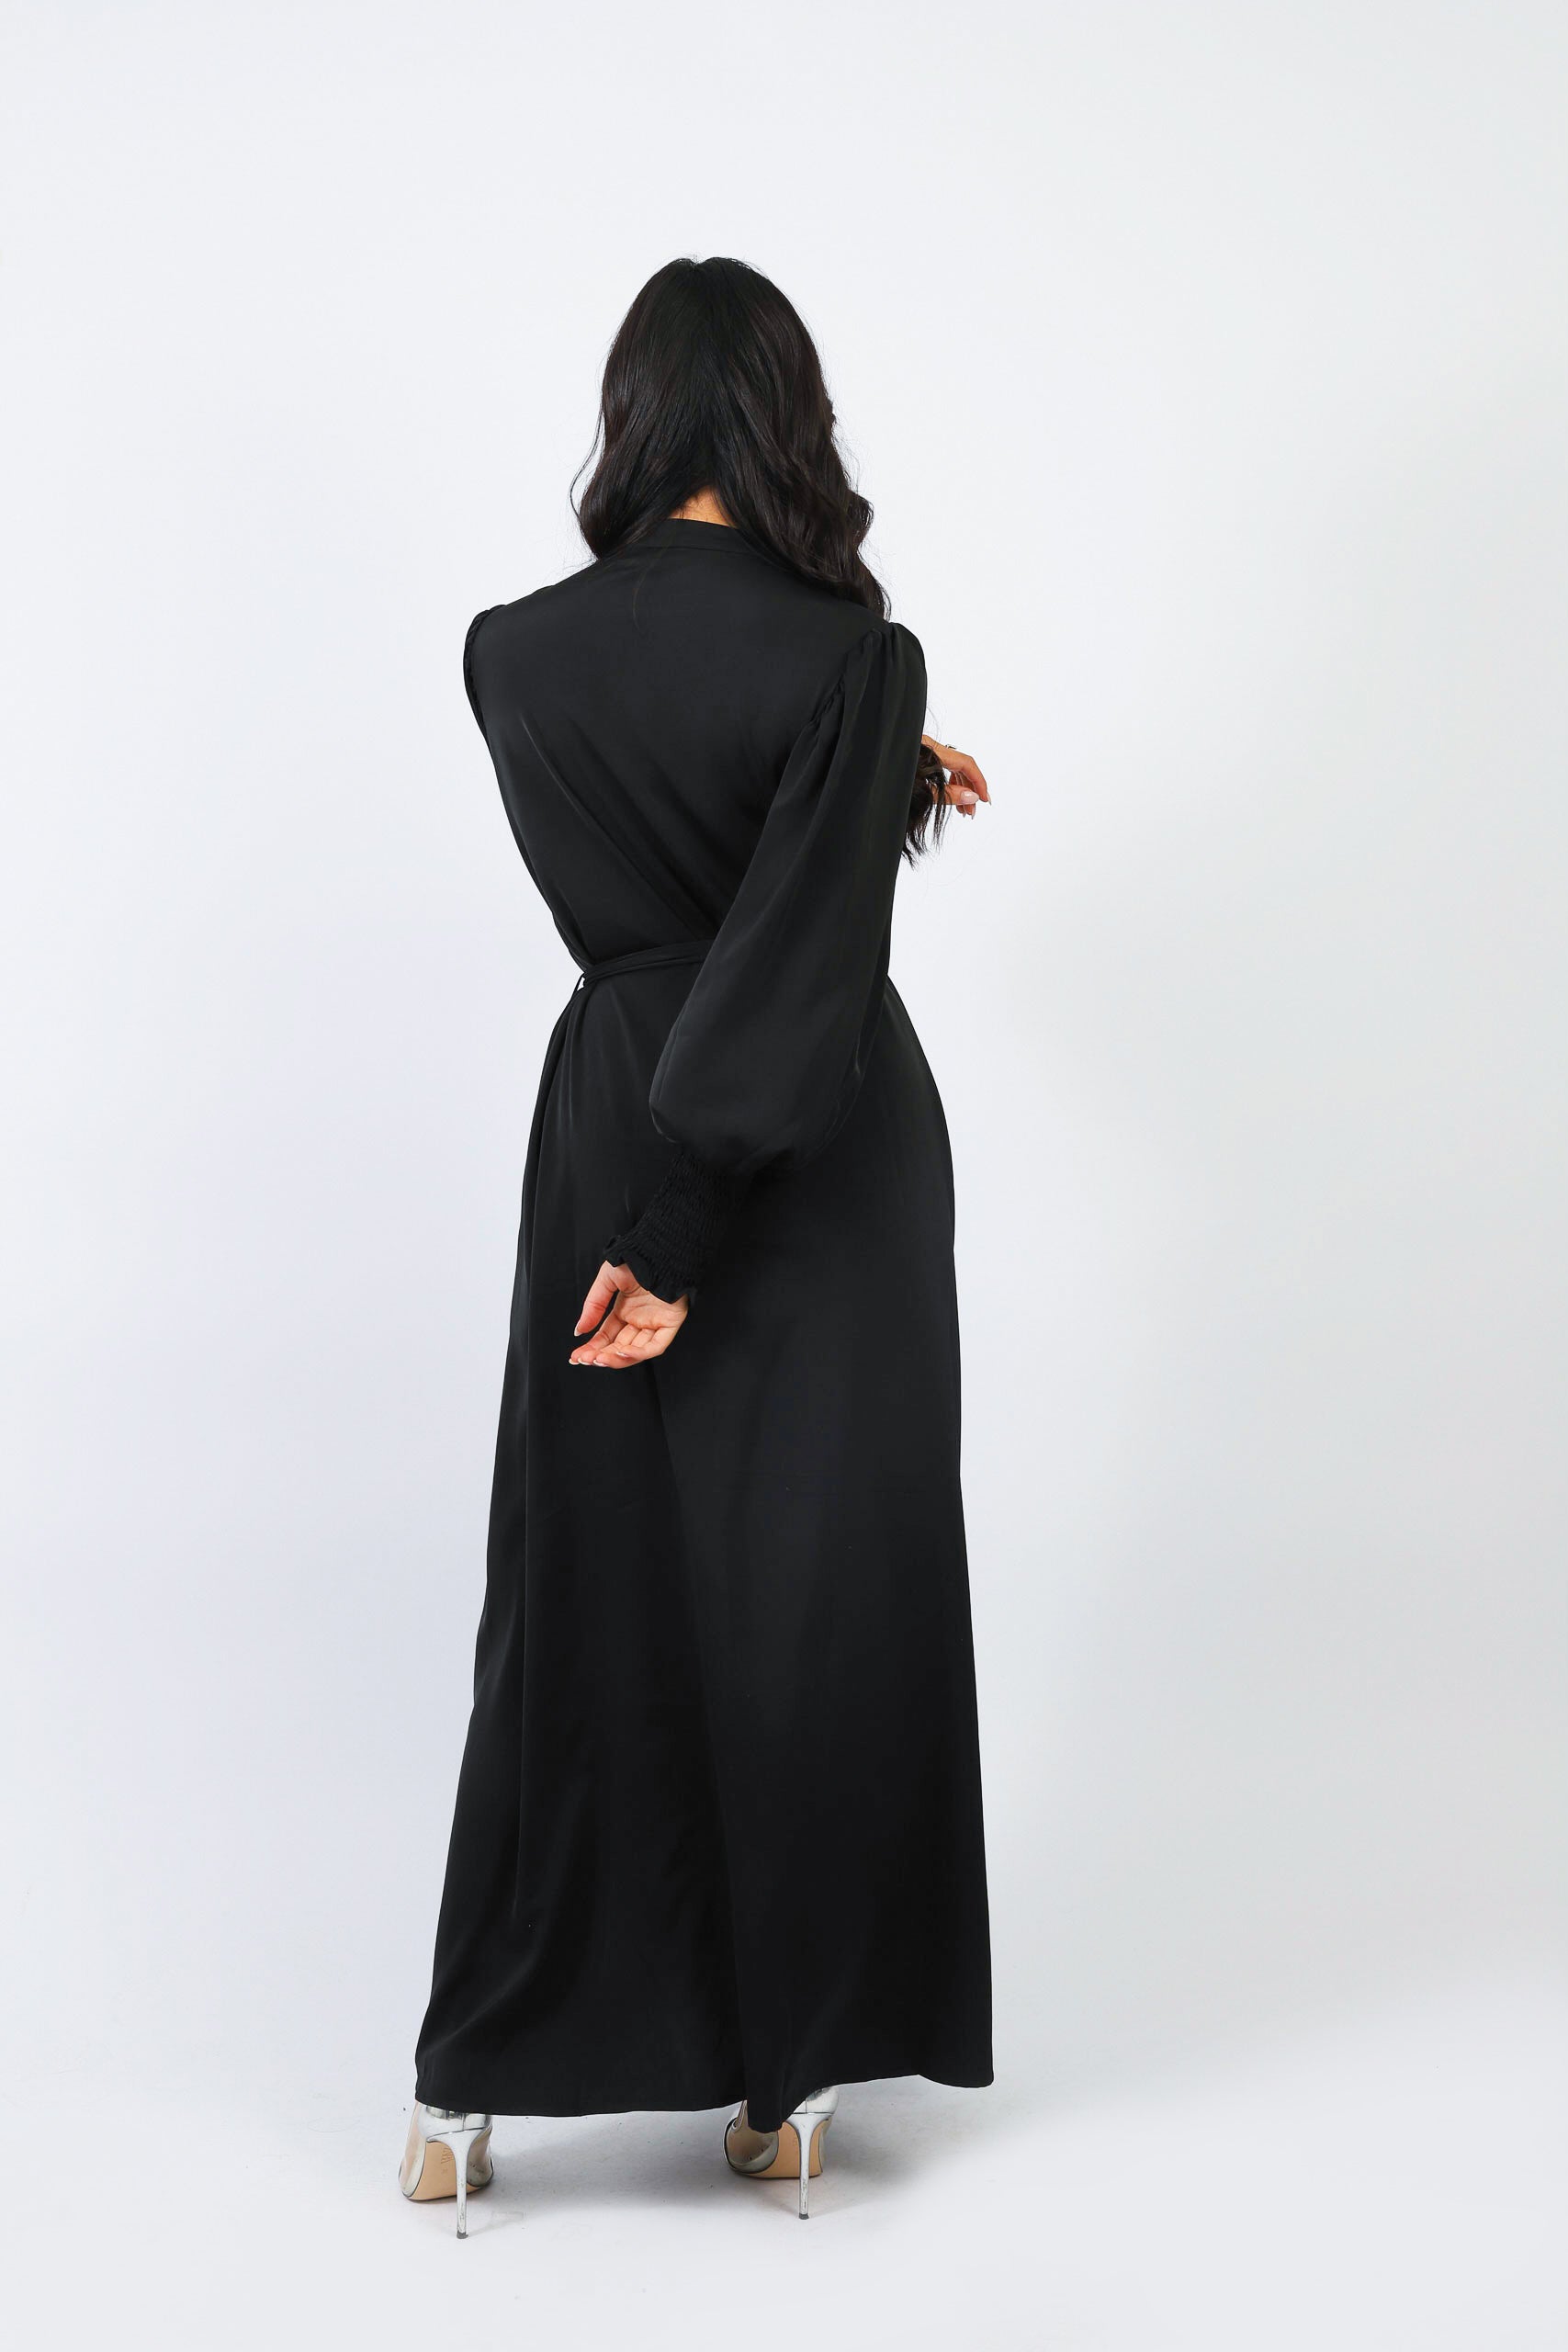 M7931Black-dress-abaya